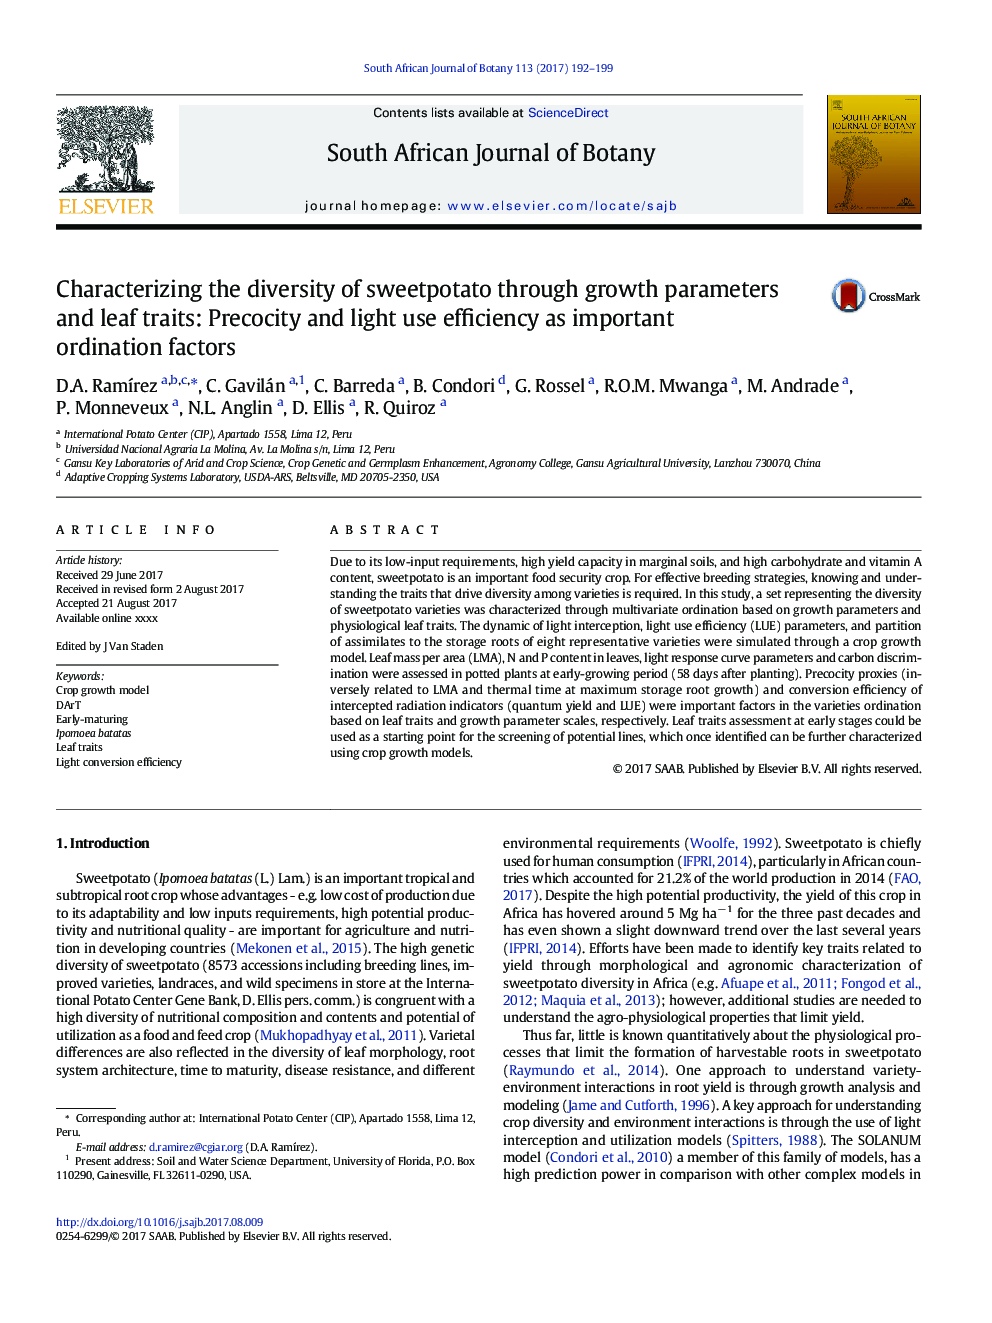 شناسایی تنوع گونه های شیرین با استفاده از پارامترهای رشد و صفات برگ: کارایی کمبود و استفاده از نور به عنوان عوامل موثر در هماهنگی 